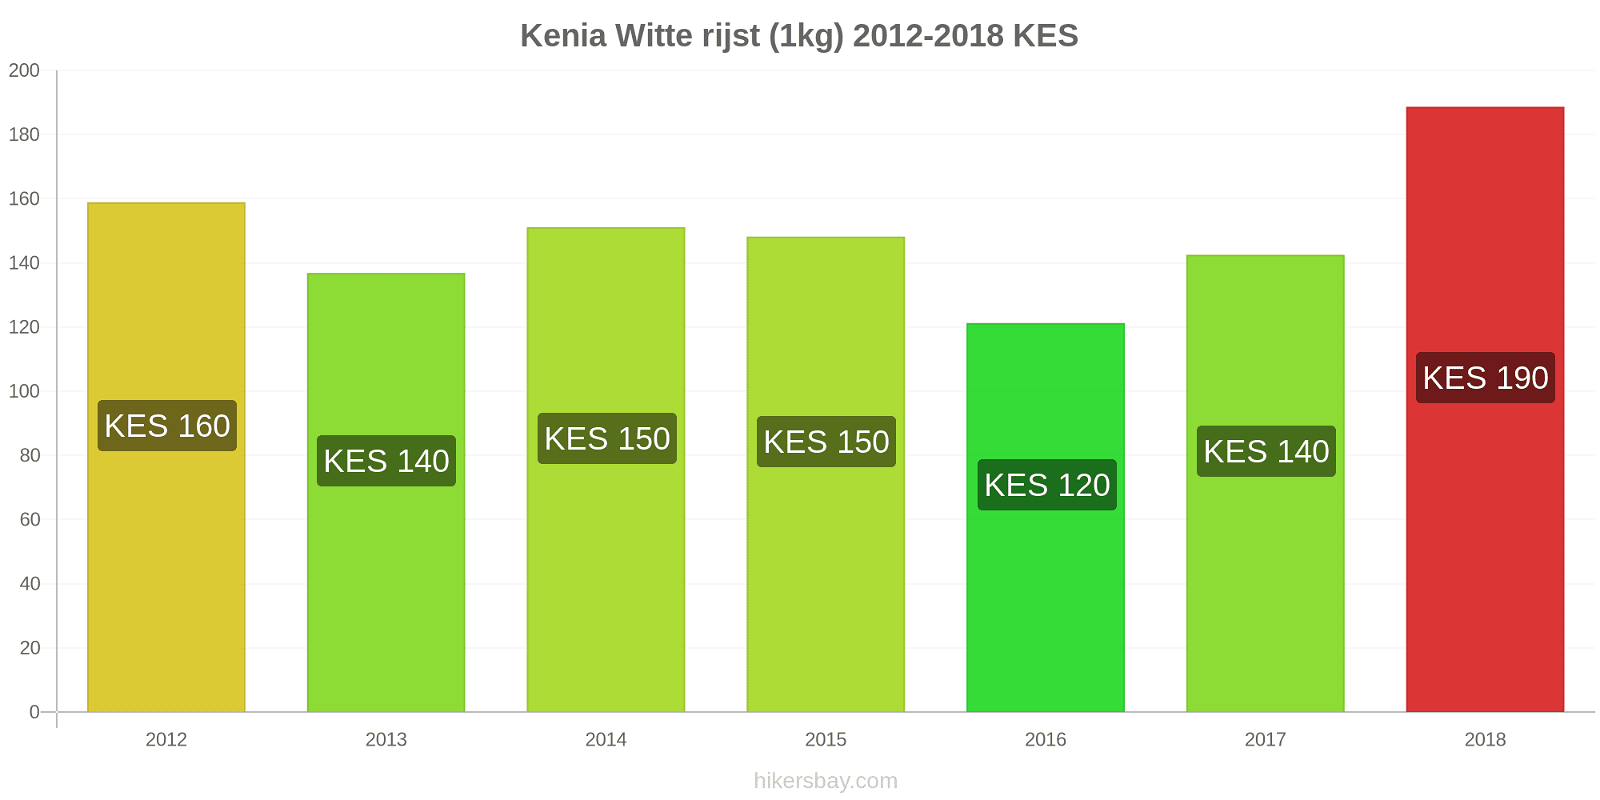 Kenia prijswijzigingen Rijst (wit) (1kg) hikersbay.com